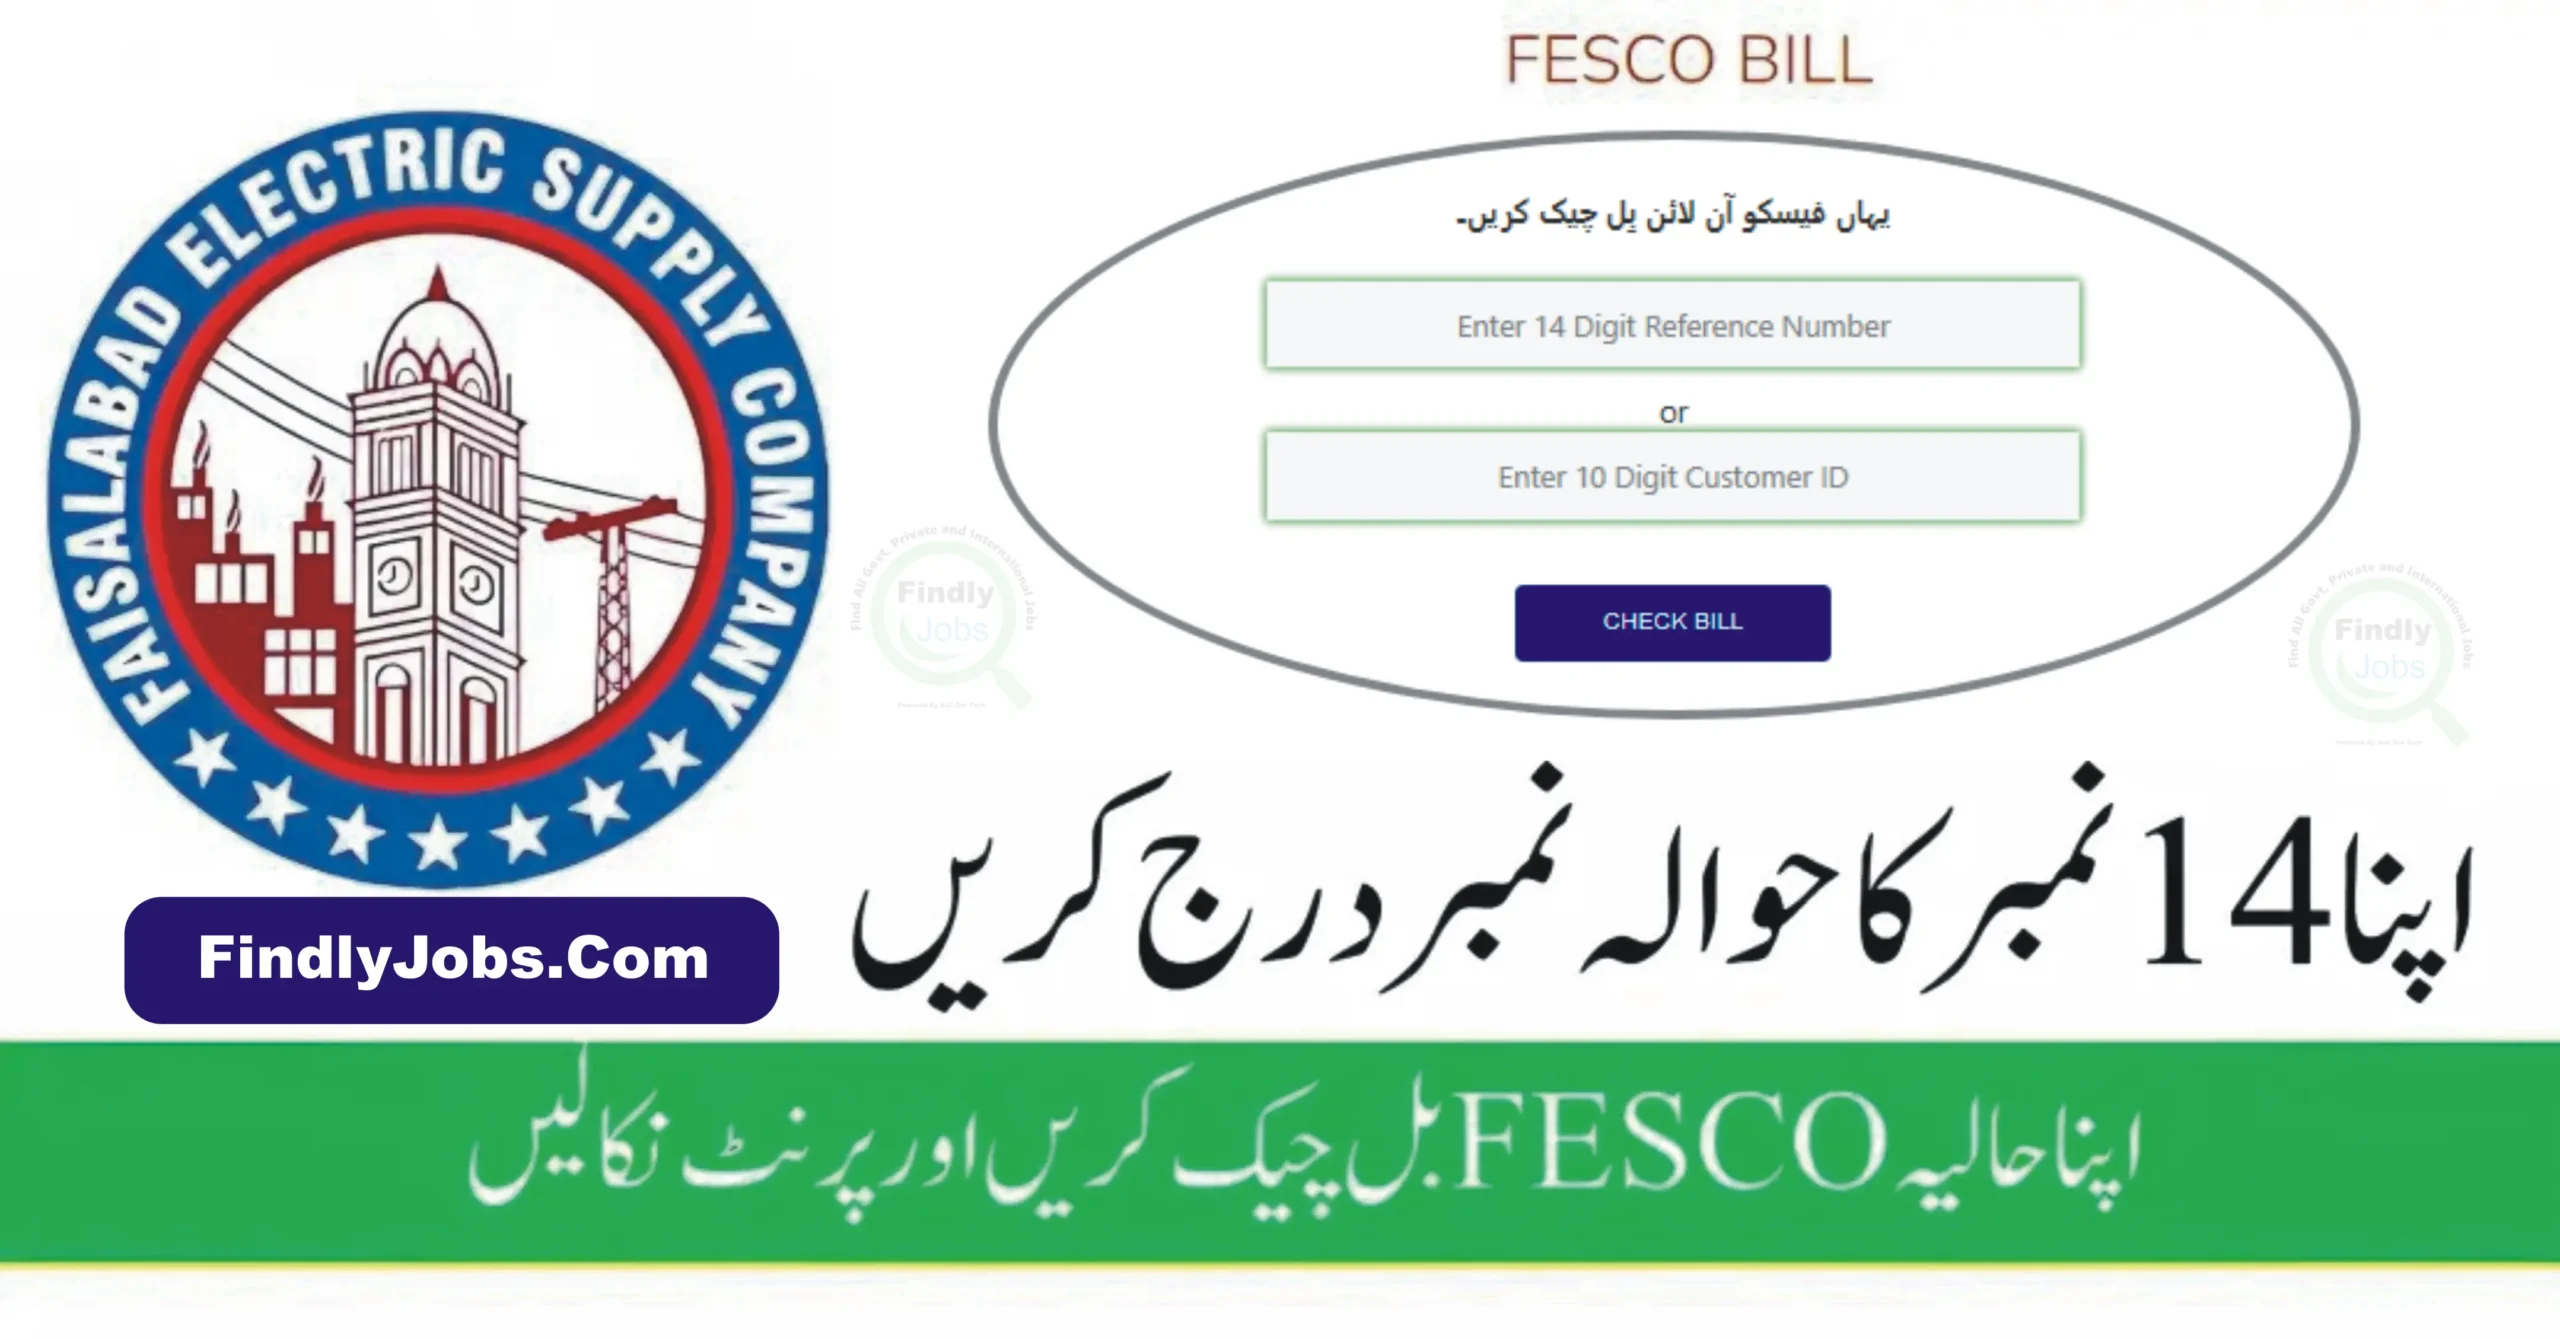 FESCO Bill Online - How to Check FESCO Bill Online